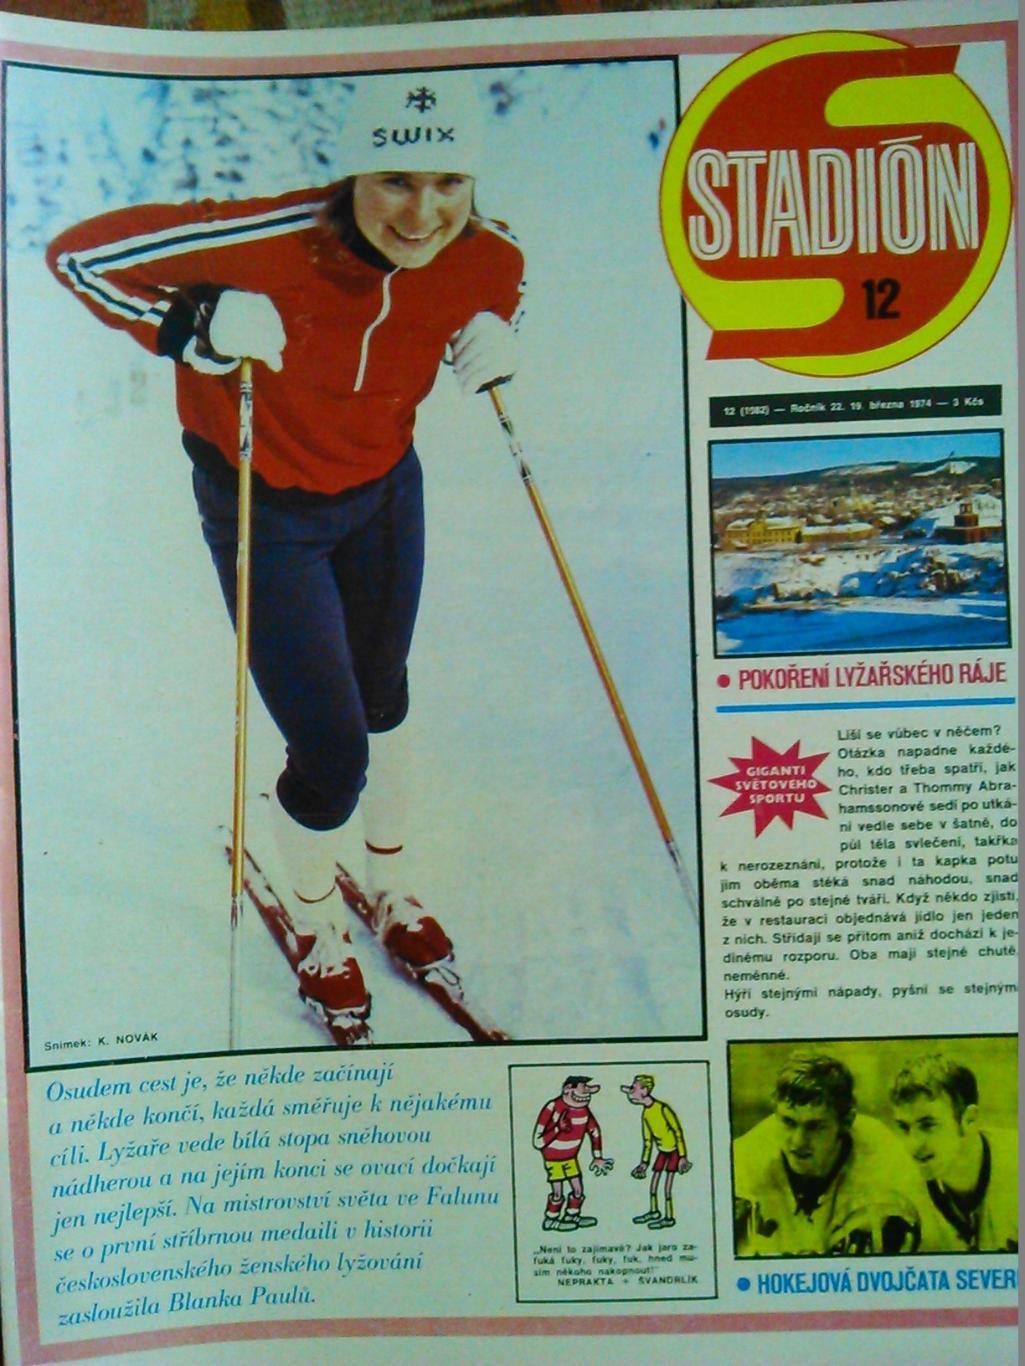 Stadion (Стадион).№ 12.1974.(Чех.) BOX. FOTBAL .Хокей-братья. Оптом знижки 50%!